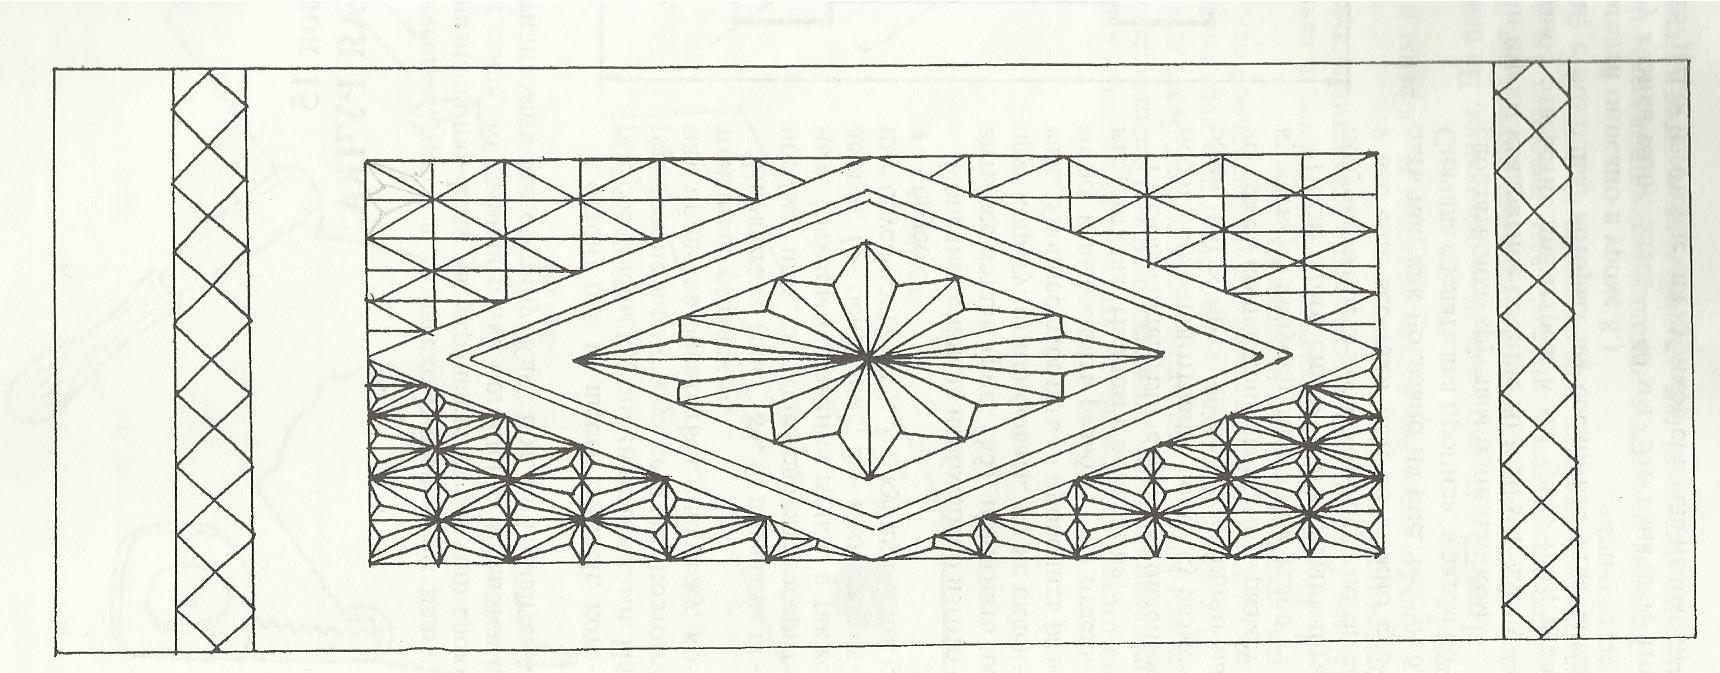 Геометрическая резьба по дереву, геометрический орнамент